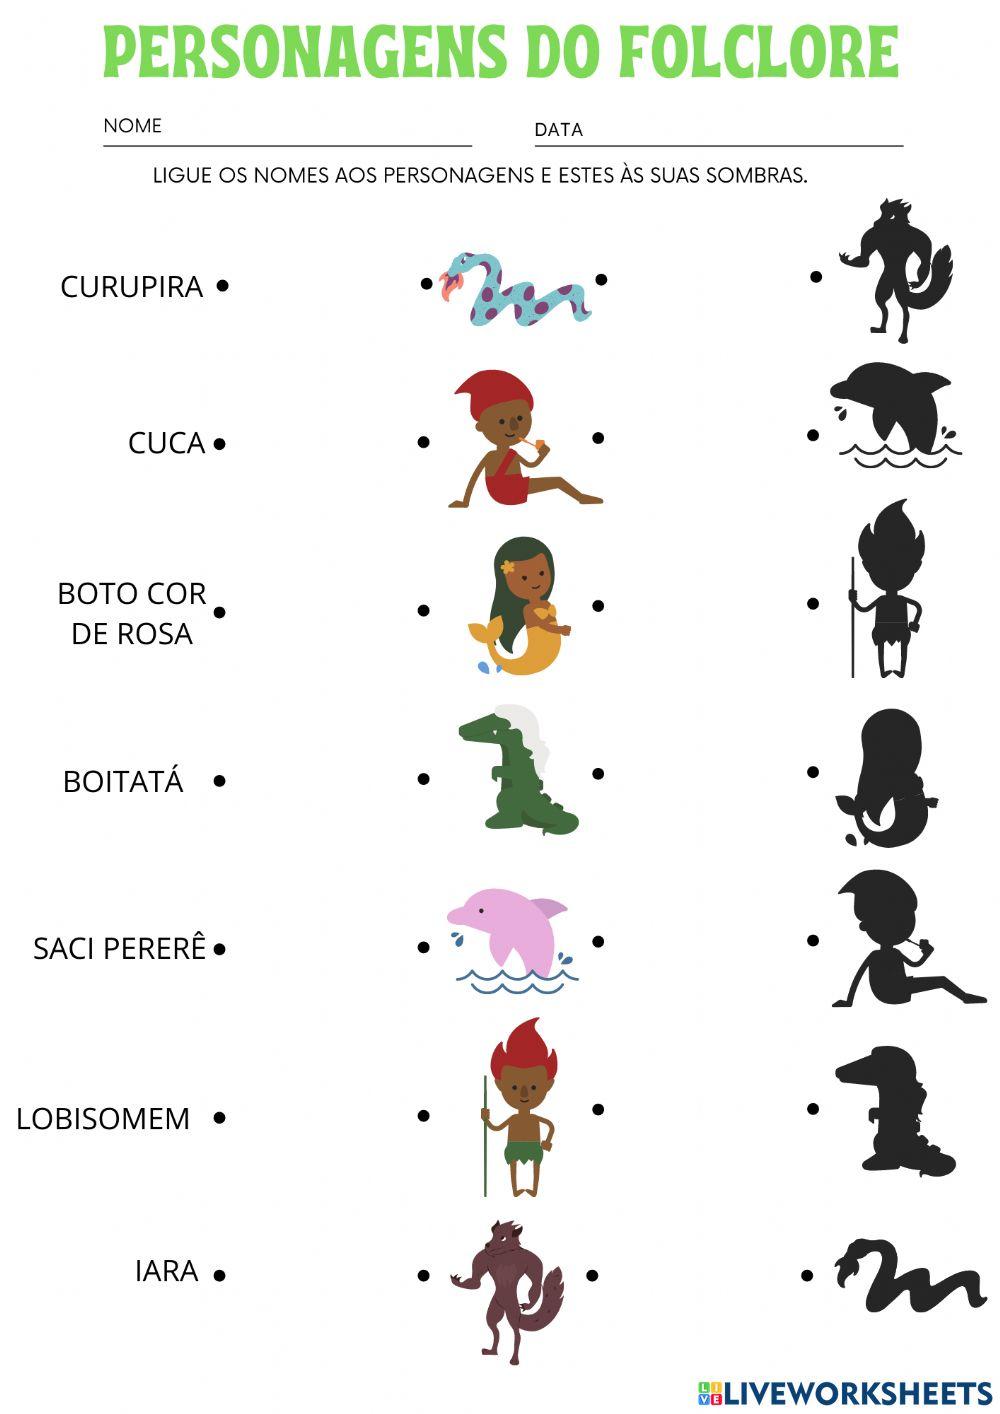 Folclore brasileiro e seus personagens